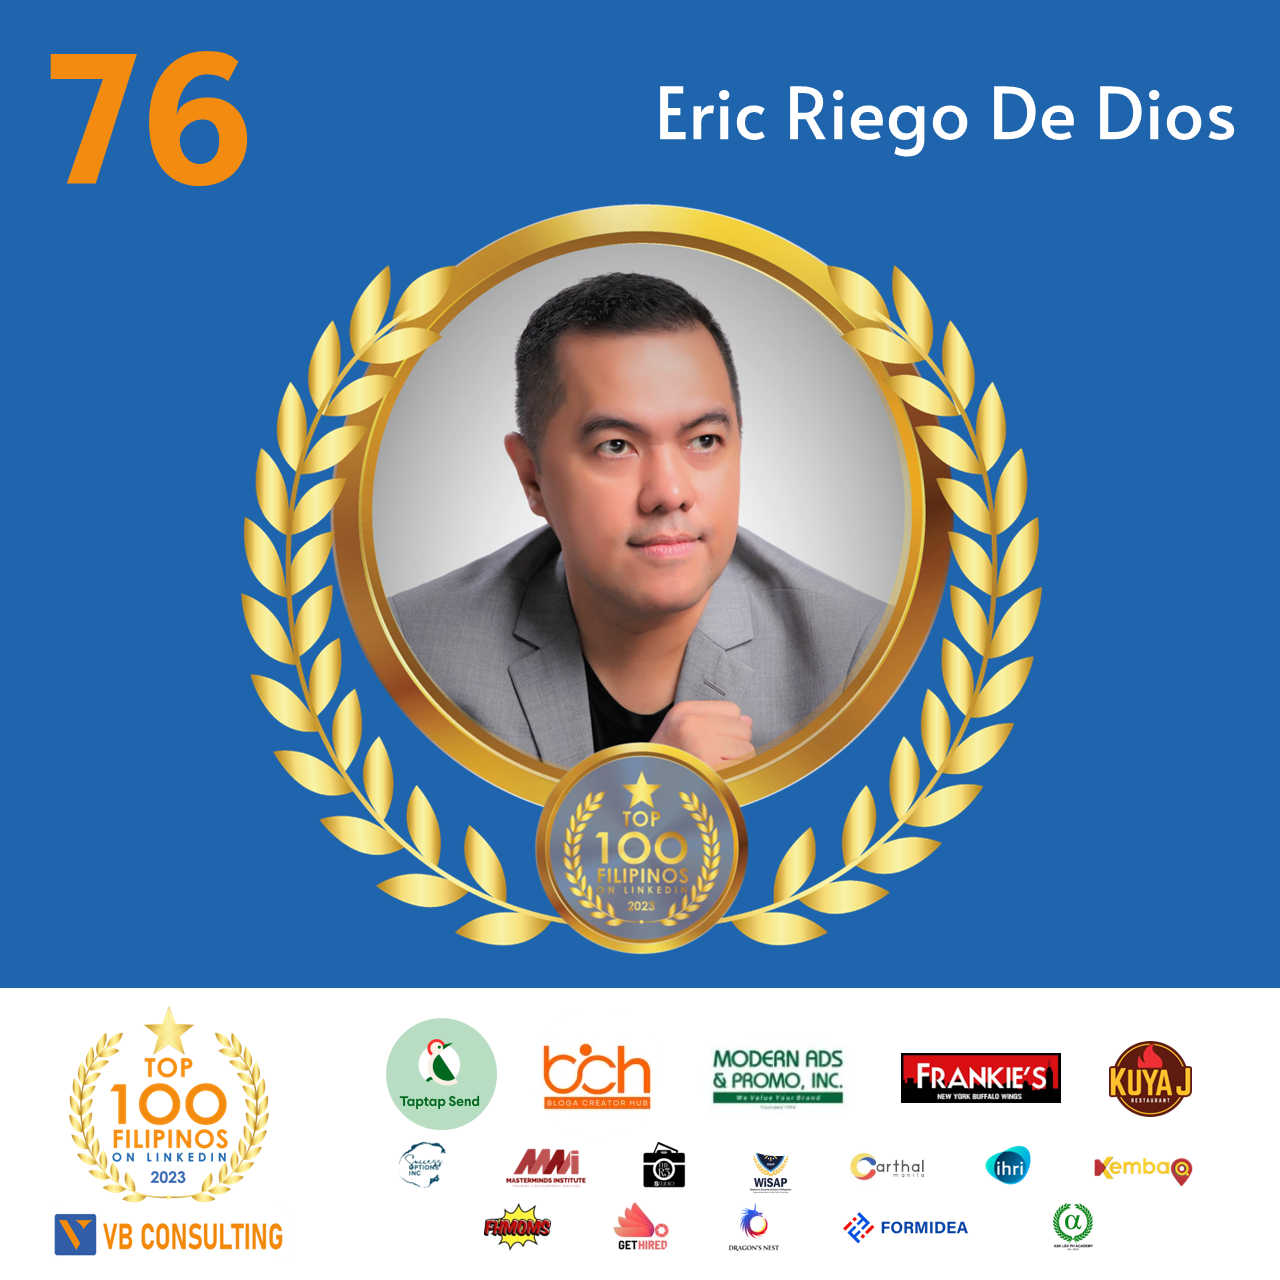 Eric Riego De Dios